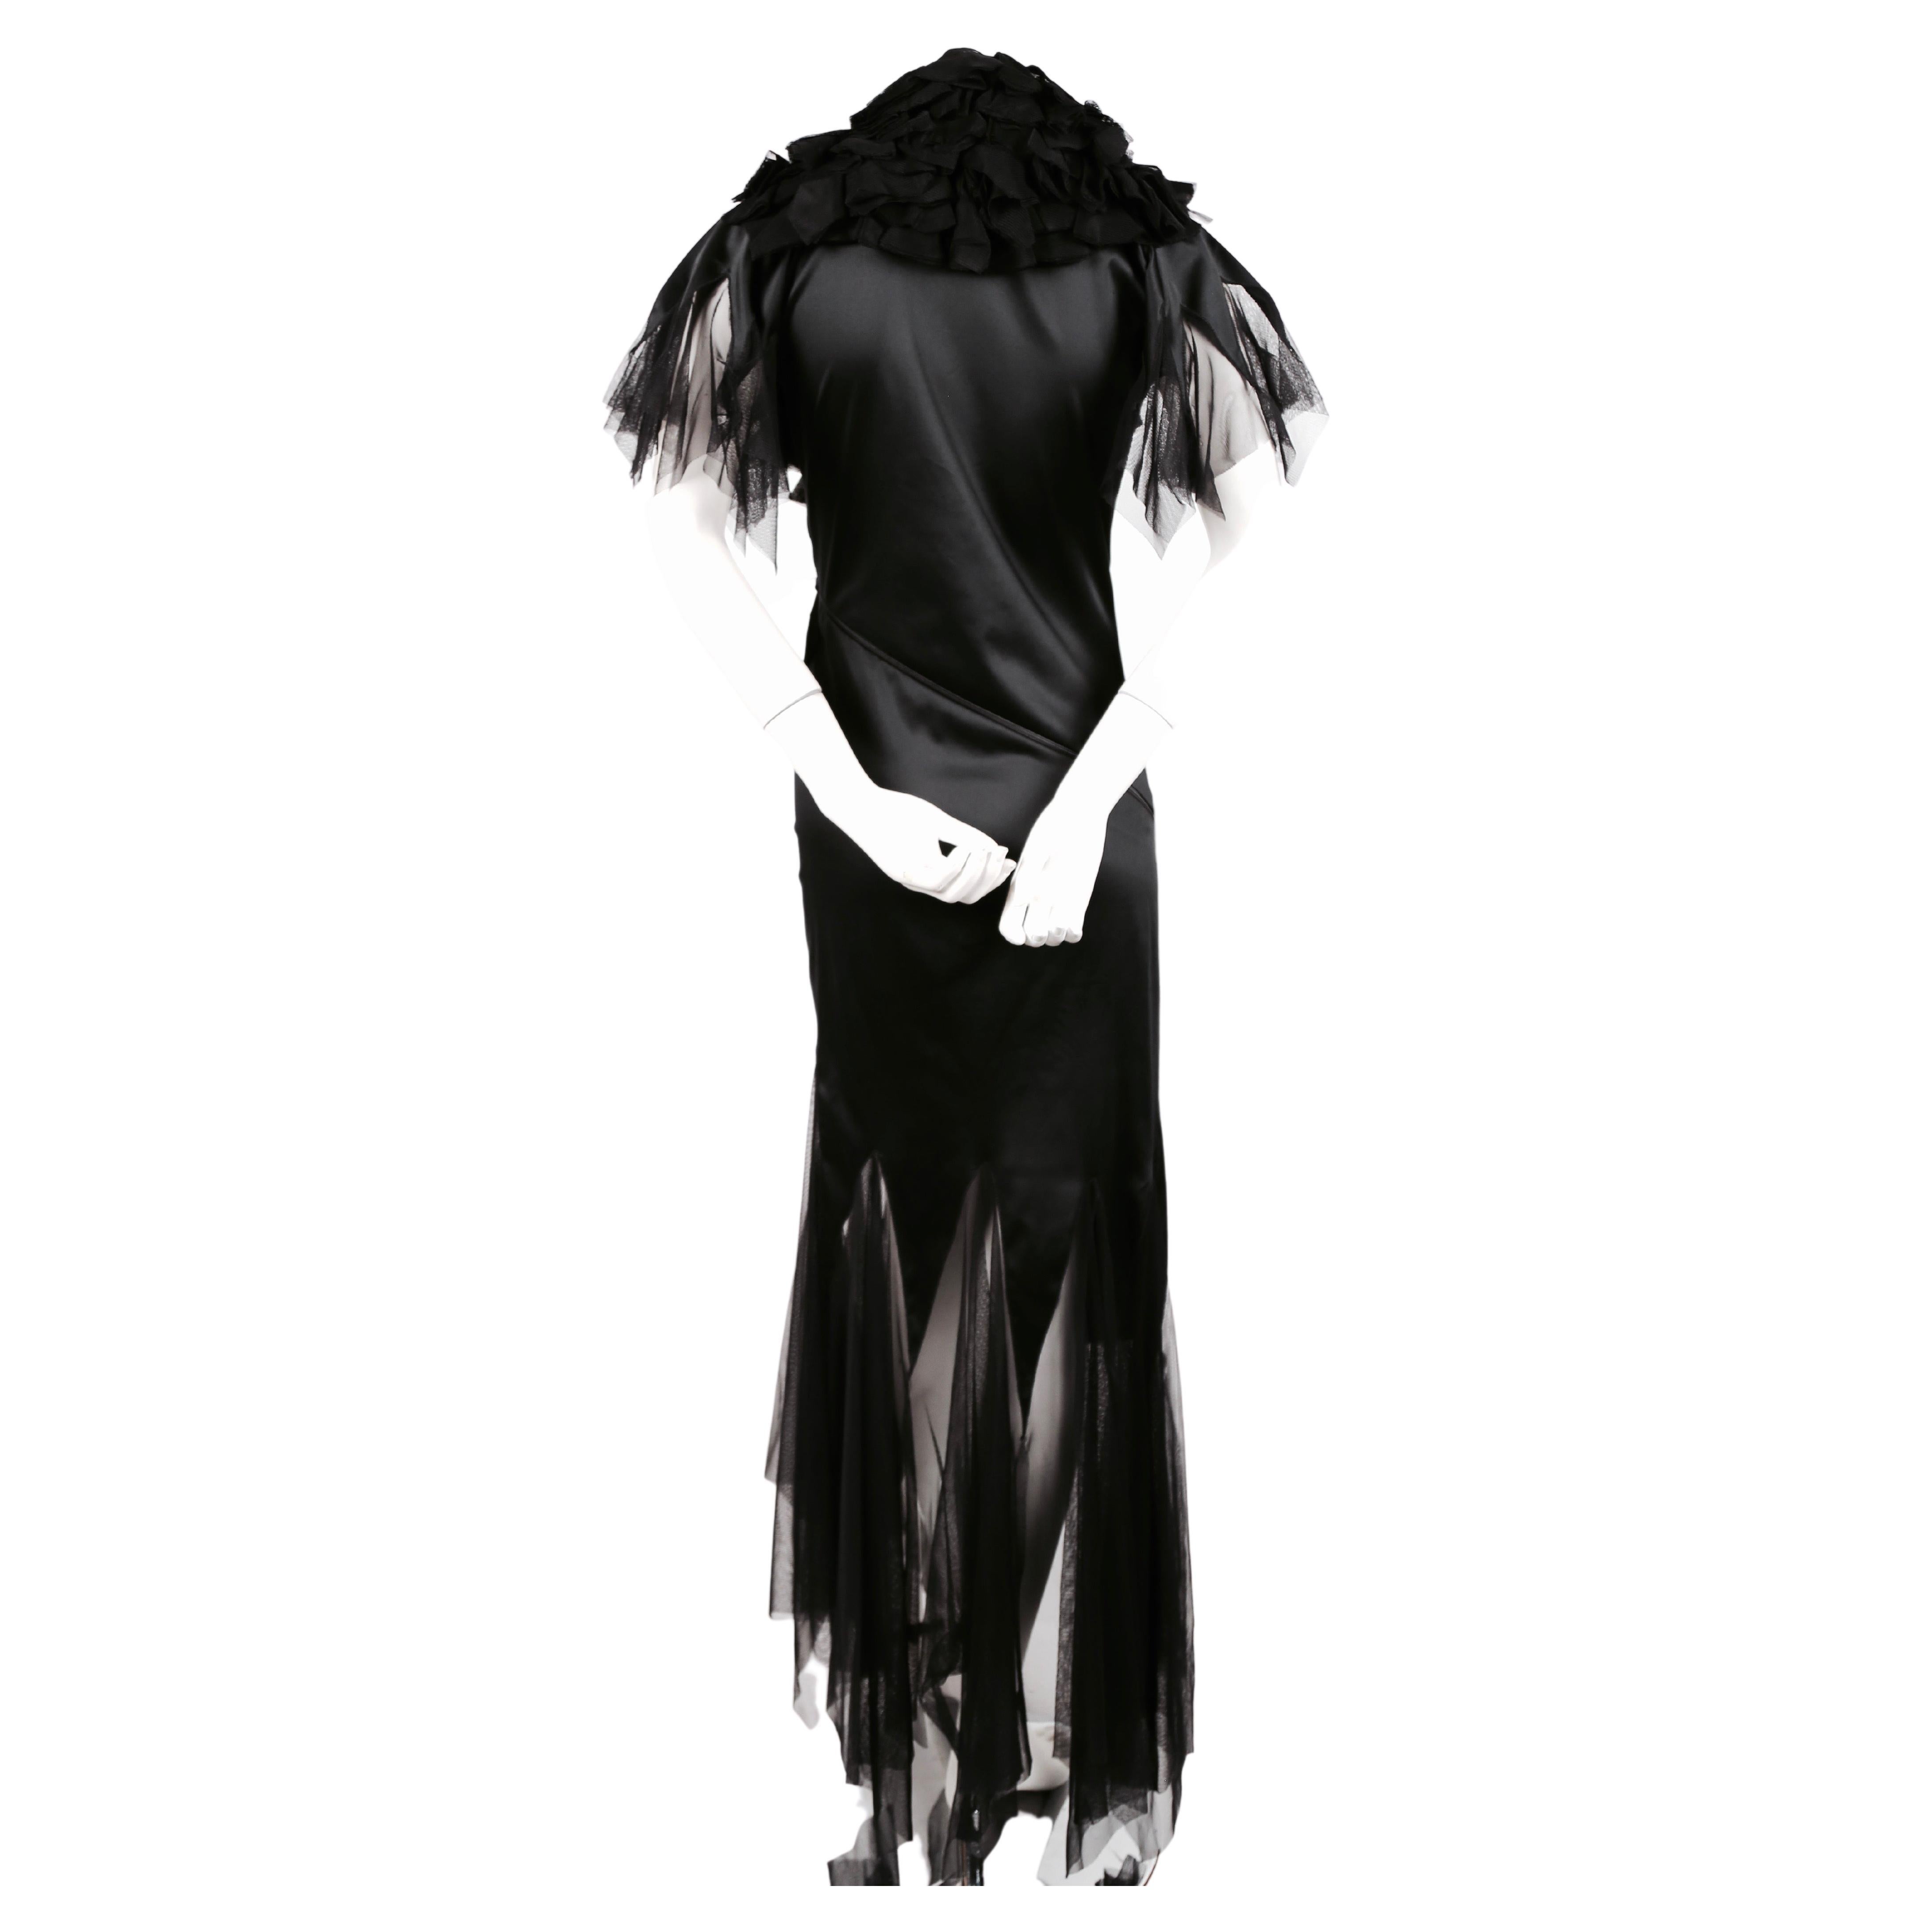 Black very rare 2001 ALEXANDER MCQUEEN RUNWAY dress with spiral zipper & tulle ruffles